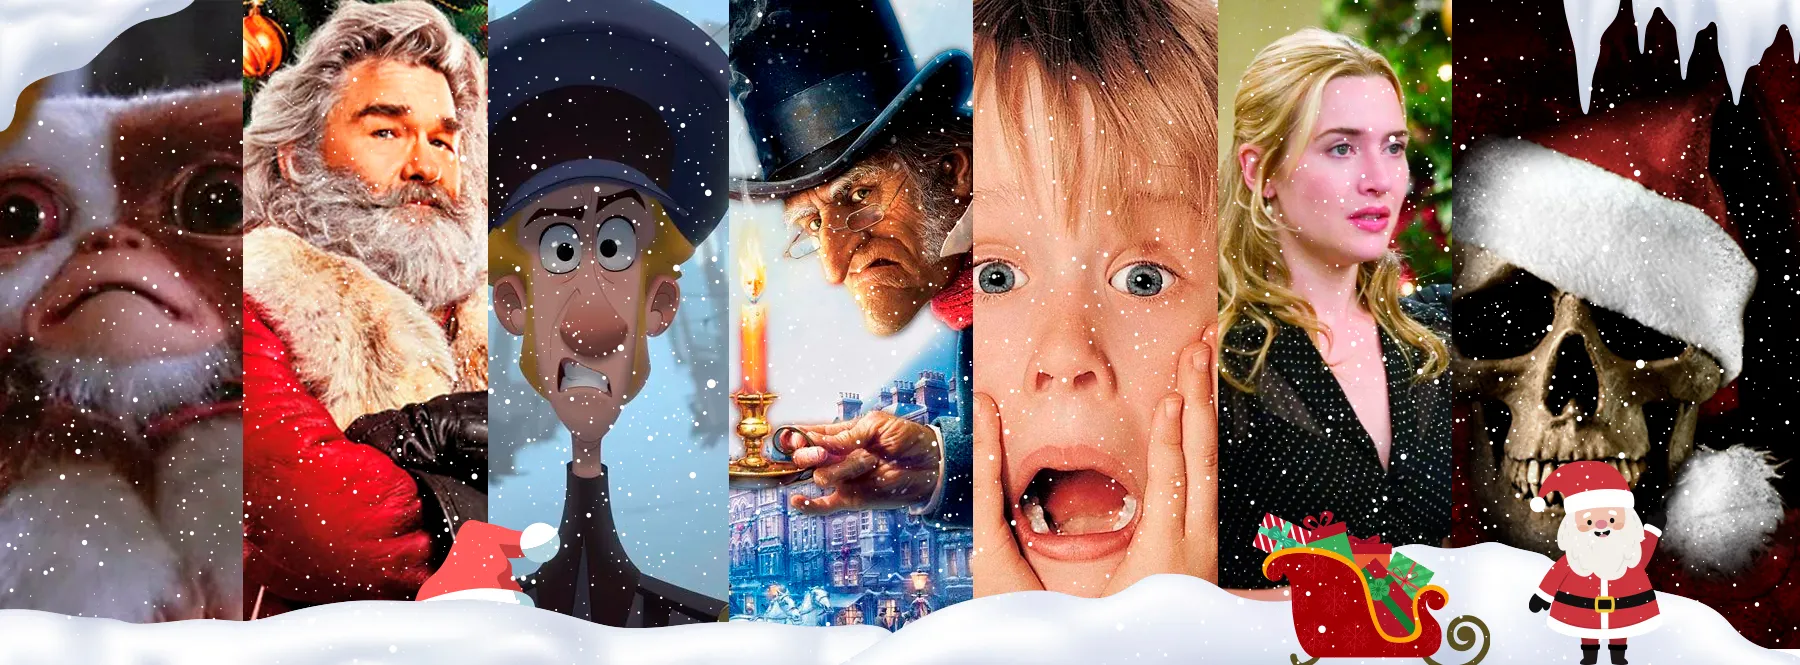 Cuál es la razón detrás de nuestra aversión hacia las películas navideñas y por qué es aceptable sentirlo así?